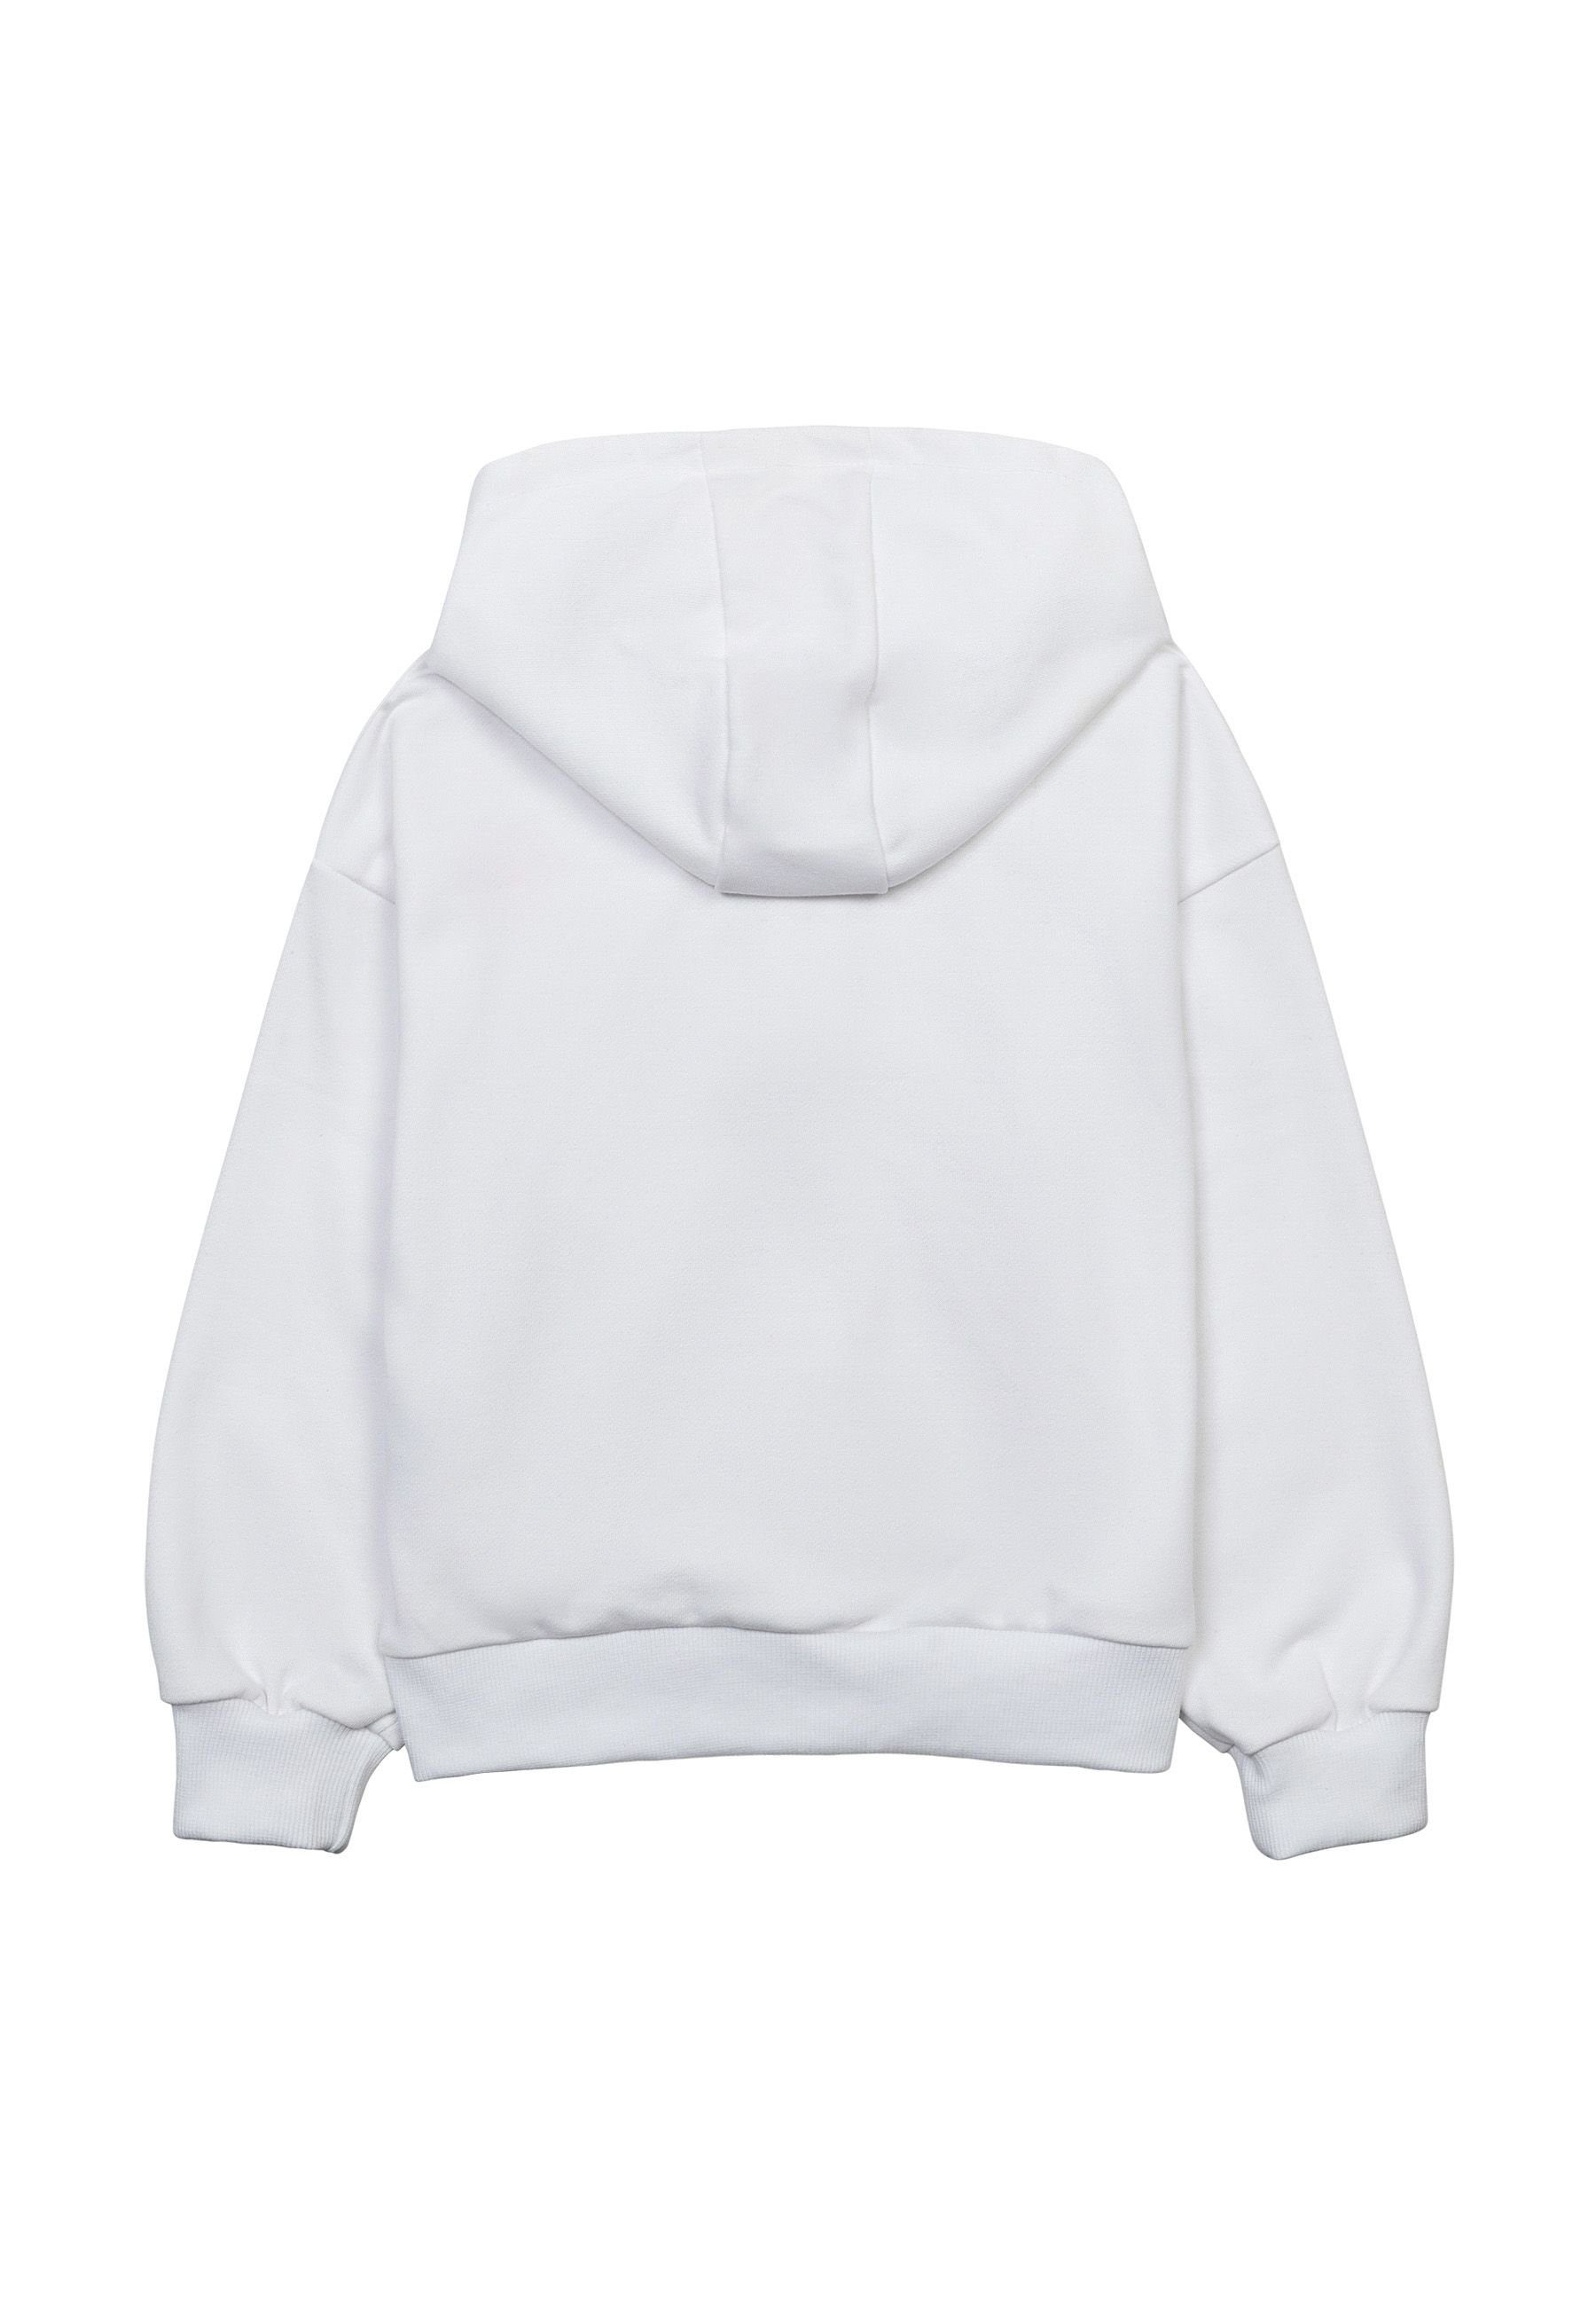 MINOTI Kapuzensweatshirt Mädchen Bluse mit Kapuze (1y-14y) Weiß